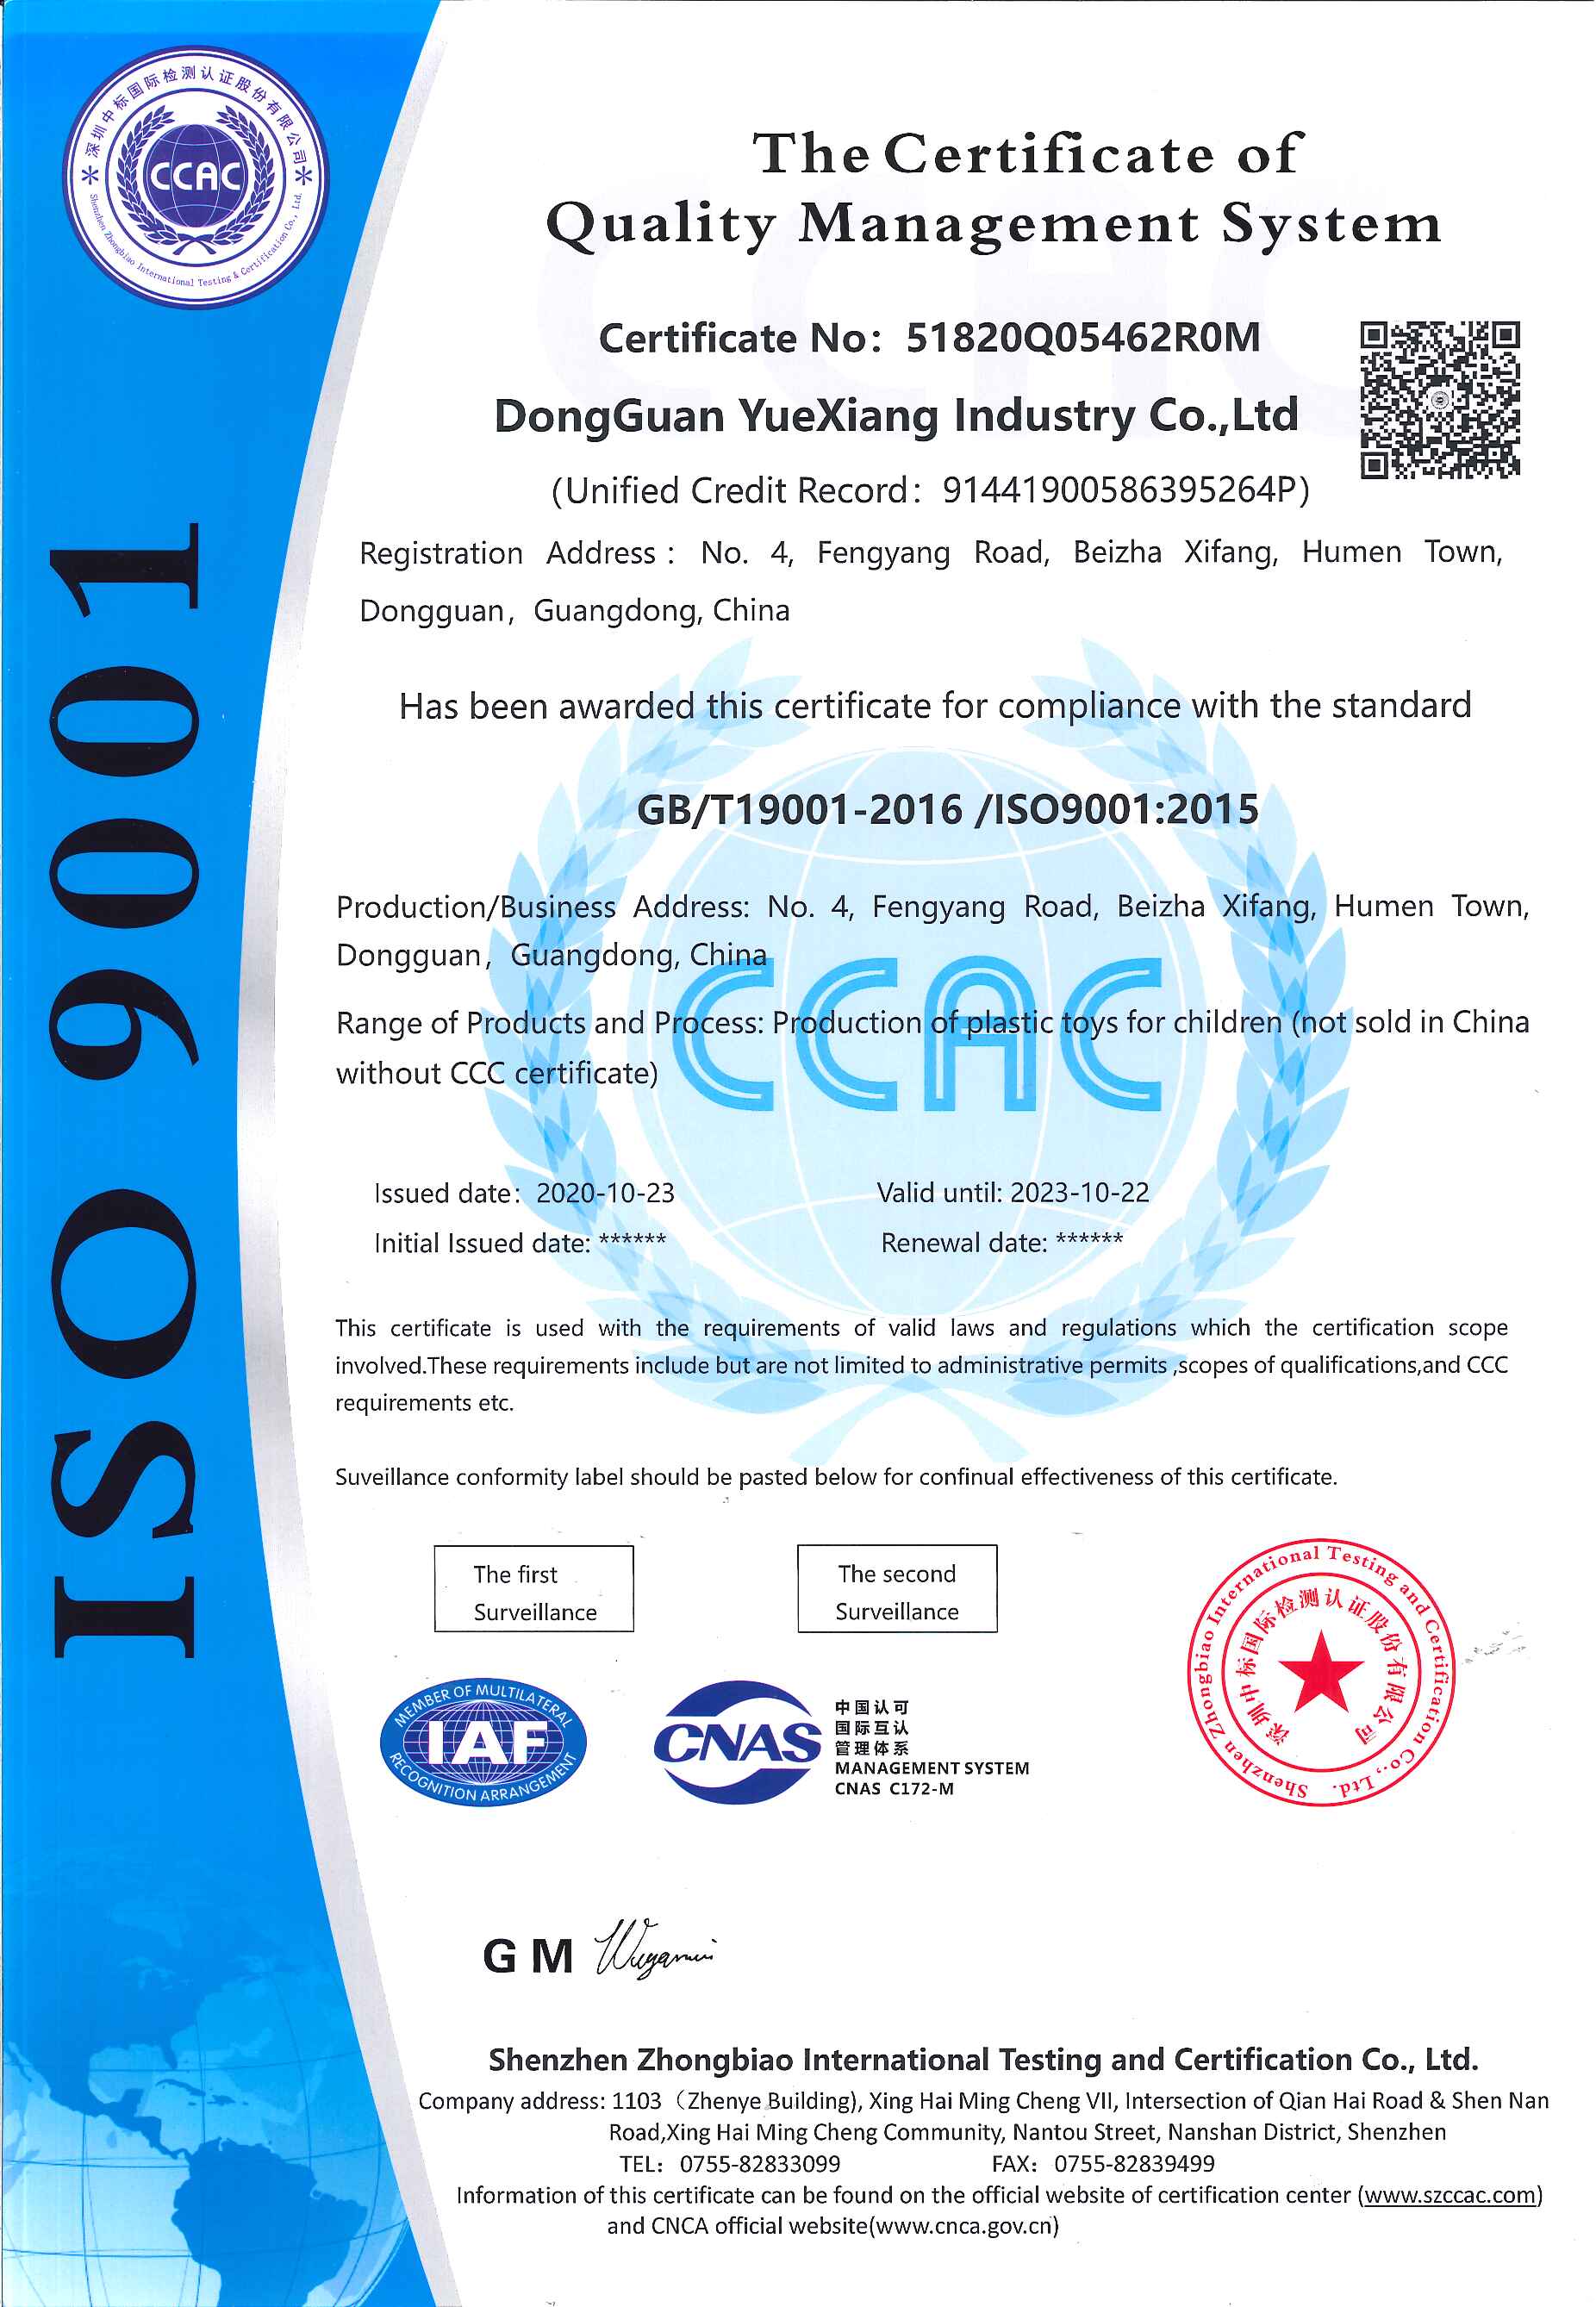 恭贺东莞市越祥实业有限公司成功拿到ISO9001认证证书